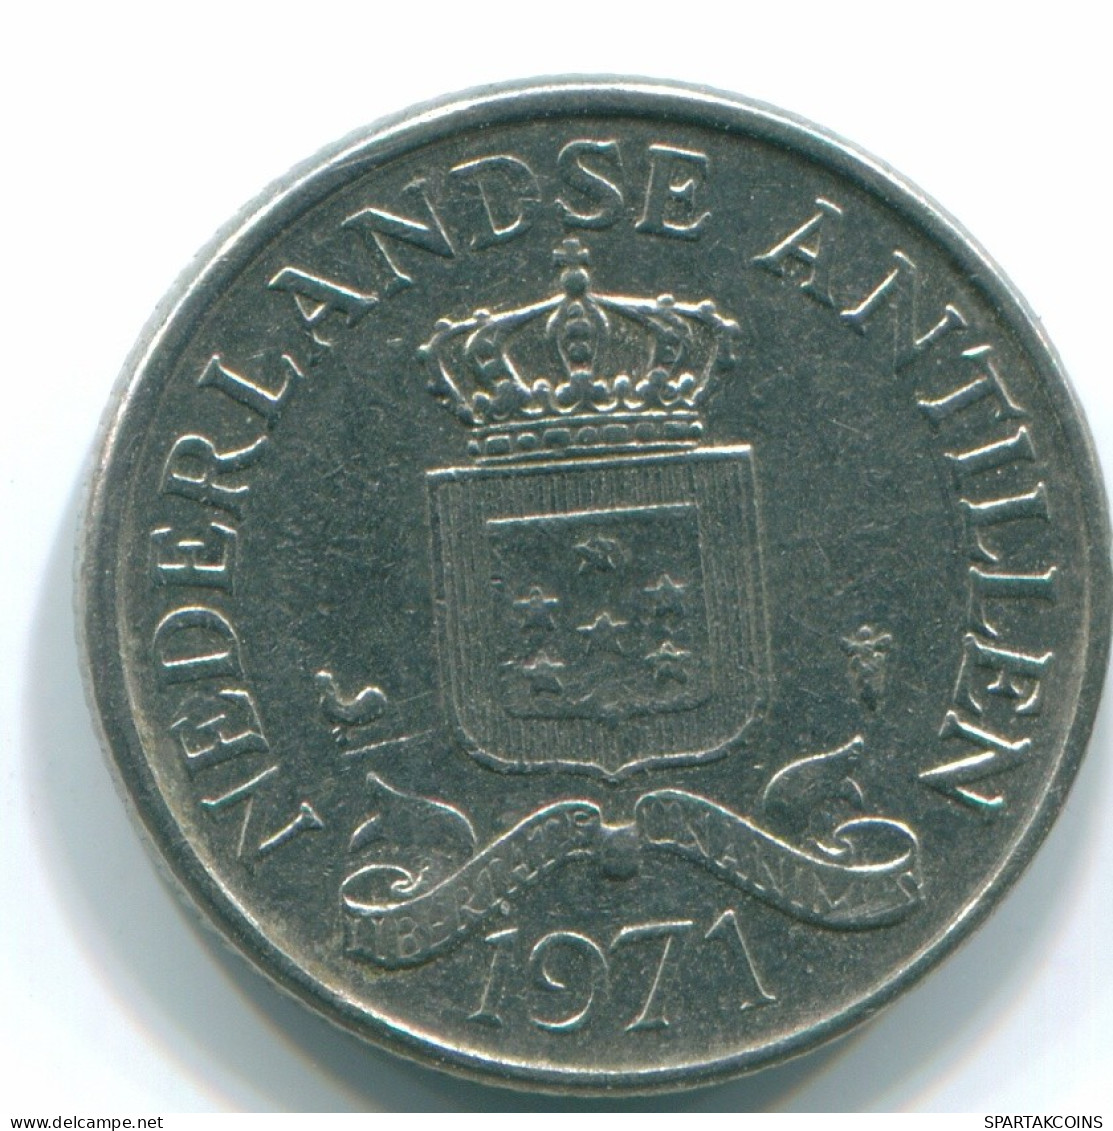 25 CENTS 1971 NETHERLANDS ANTILLES Nickel Colonial Coin #S11548.U.A - Niederländische Antillen